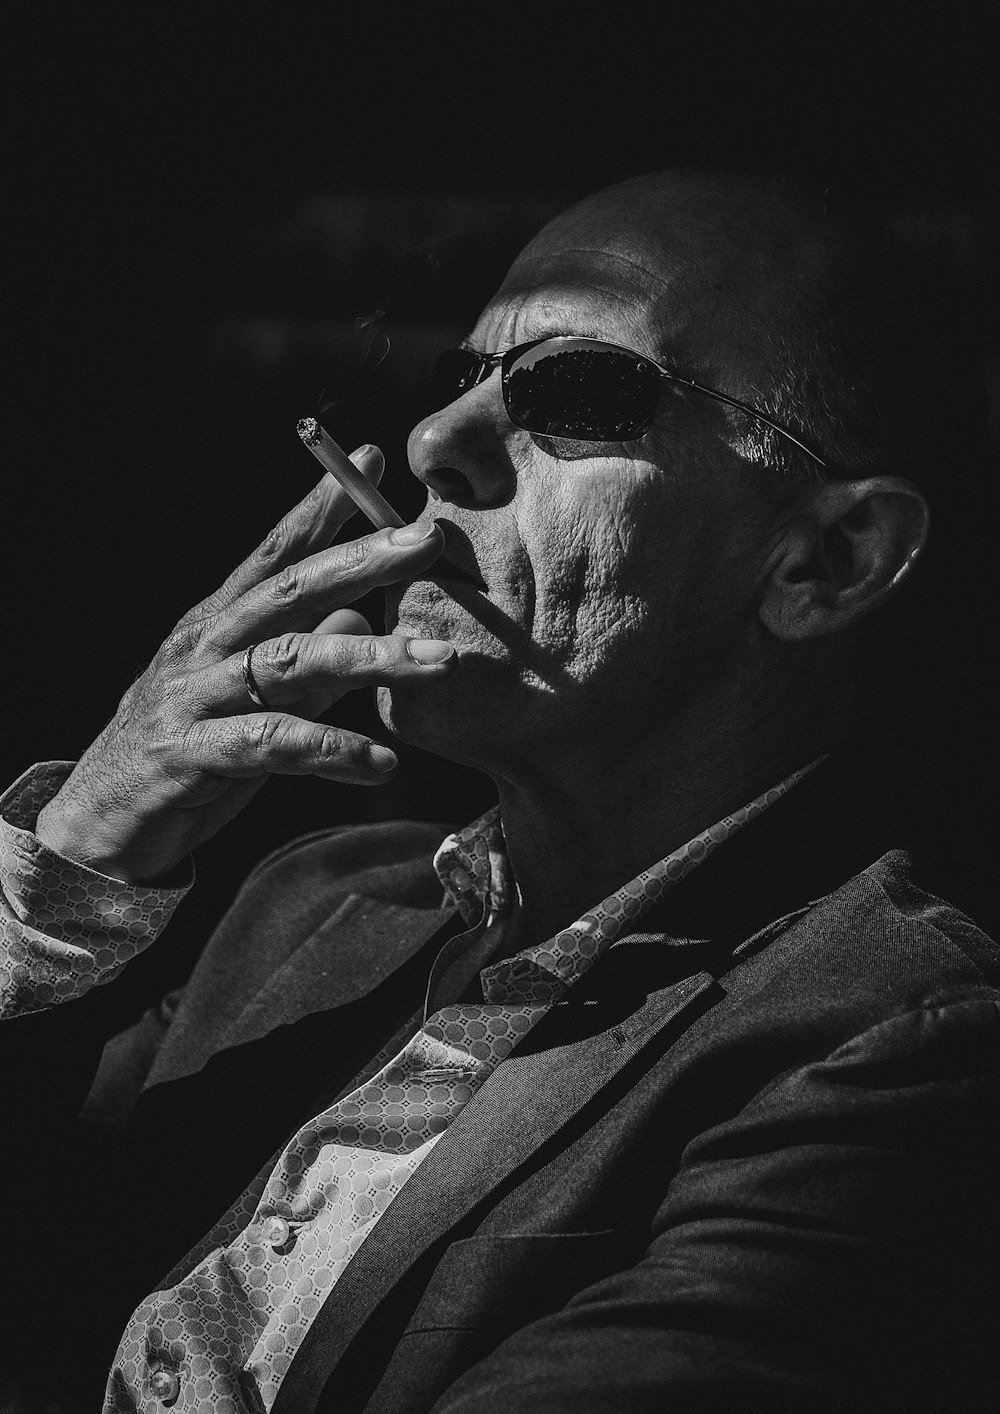 man smokes cigarette in monochrome photo